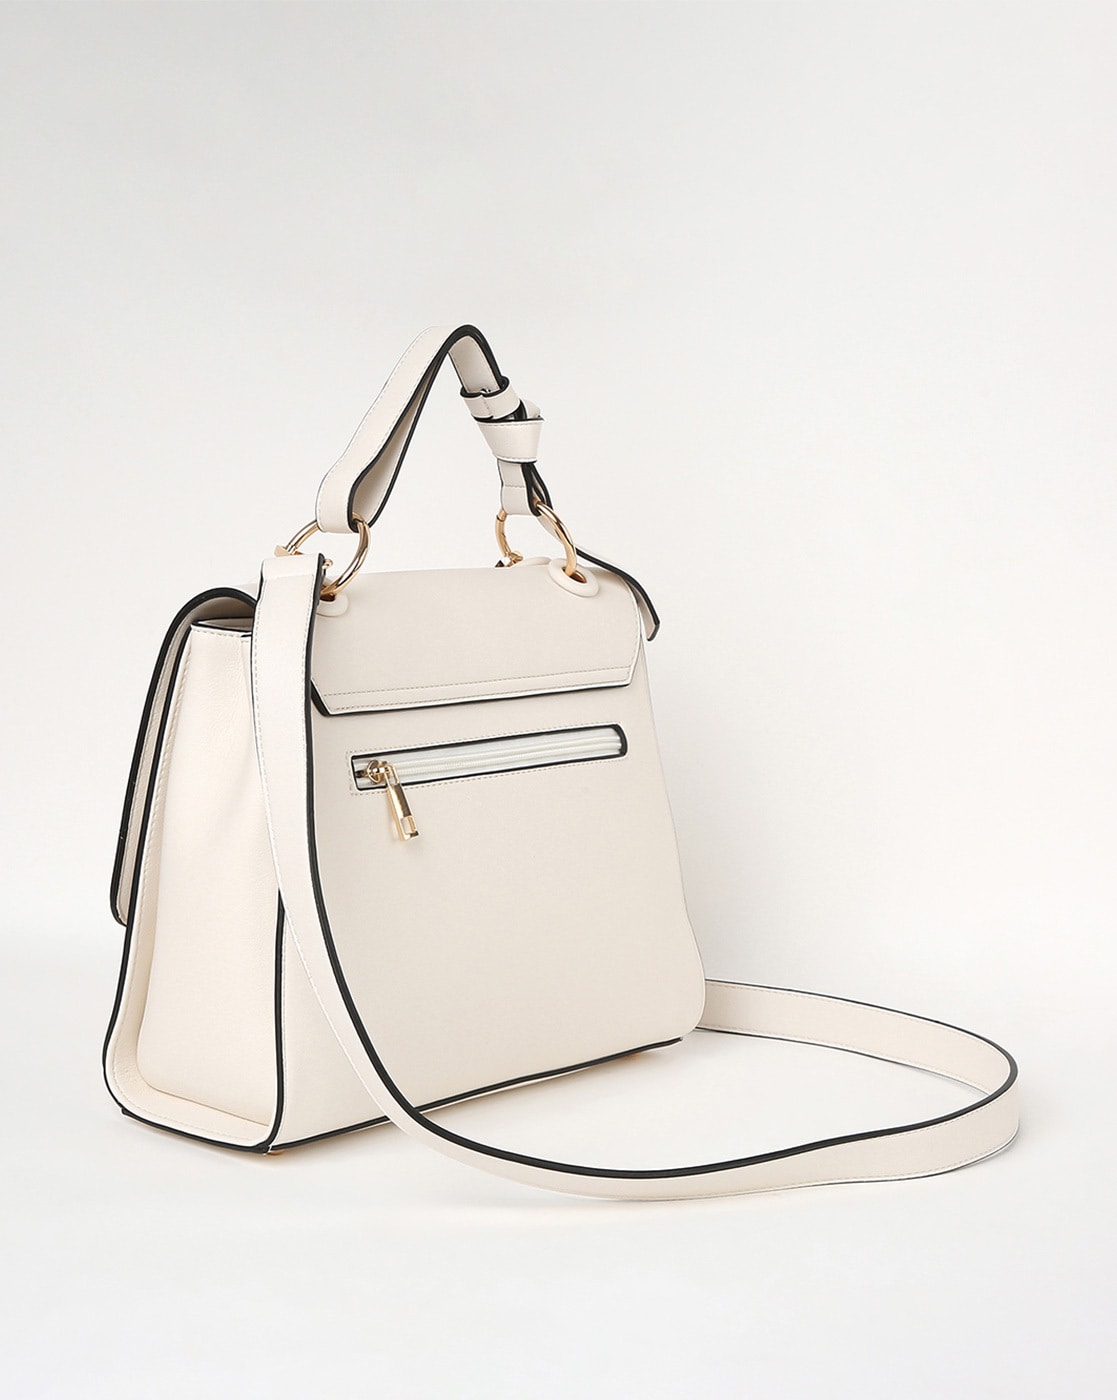 Stylish-White-Handbags-2013 | White handbag, Big purses, Fashion handbags